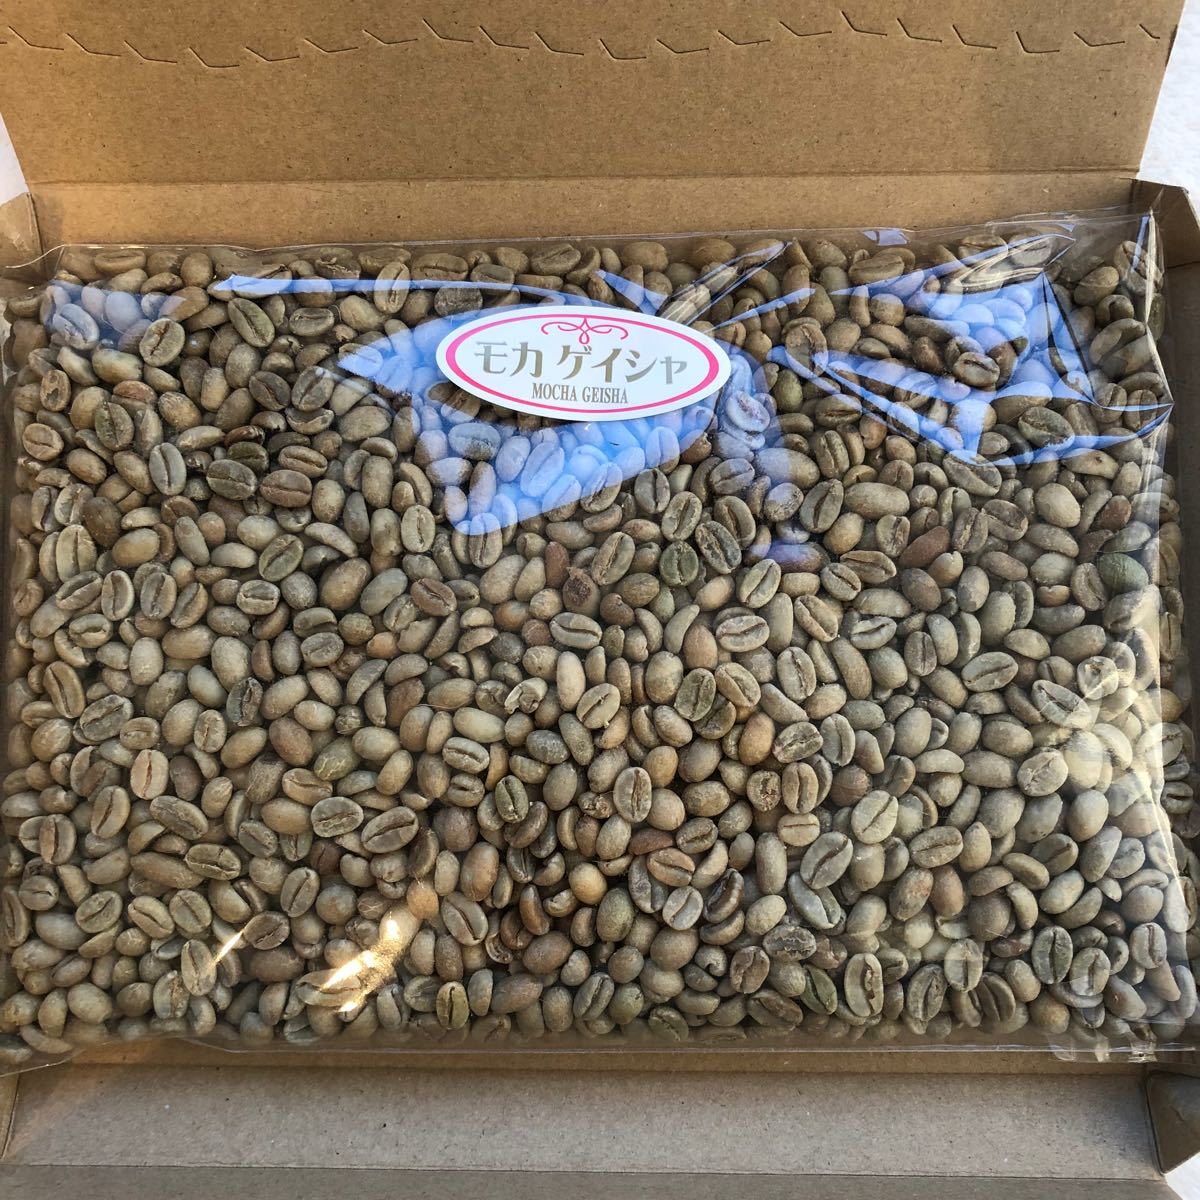 コーヒー豆 エチオピア モカ ゲイシャ 800g 焙煎用生豆 コーヒー豆 コーヒー生豆 珈琲 生豆